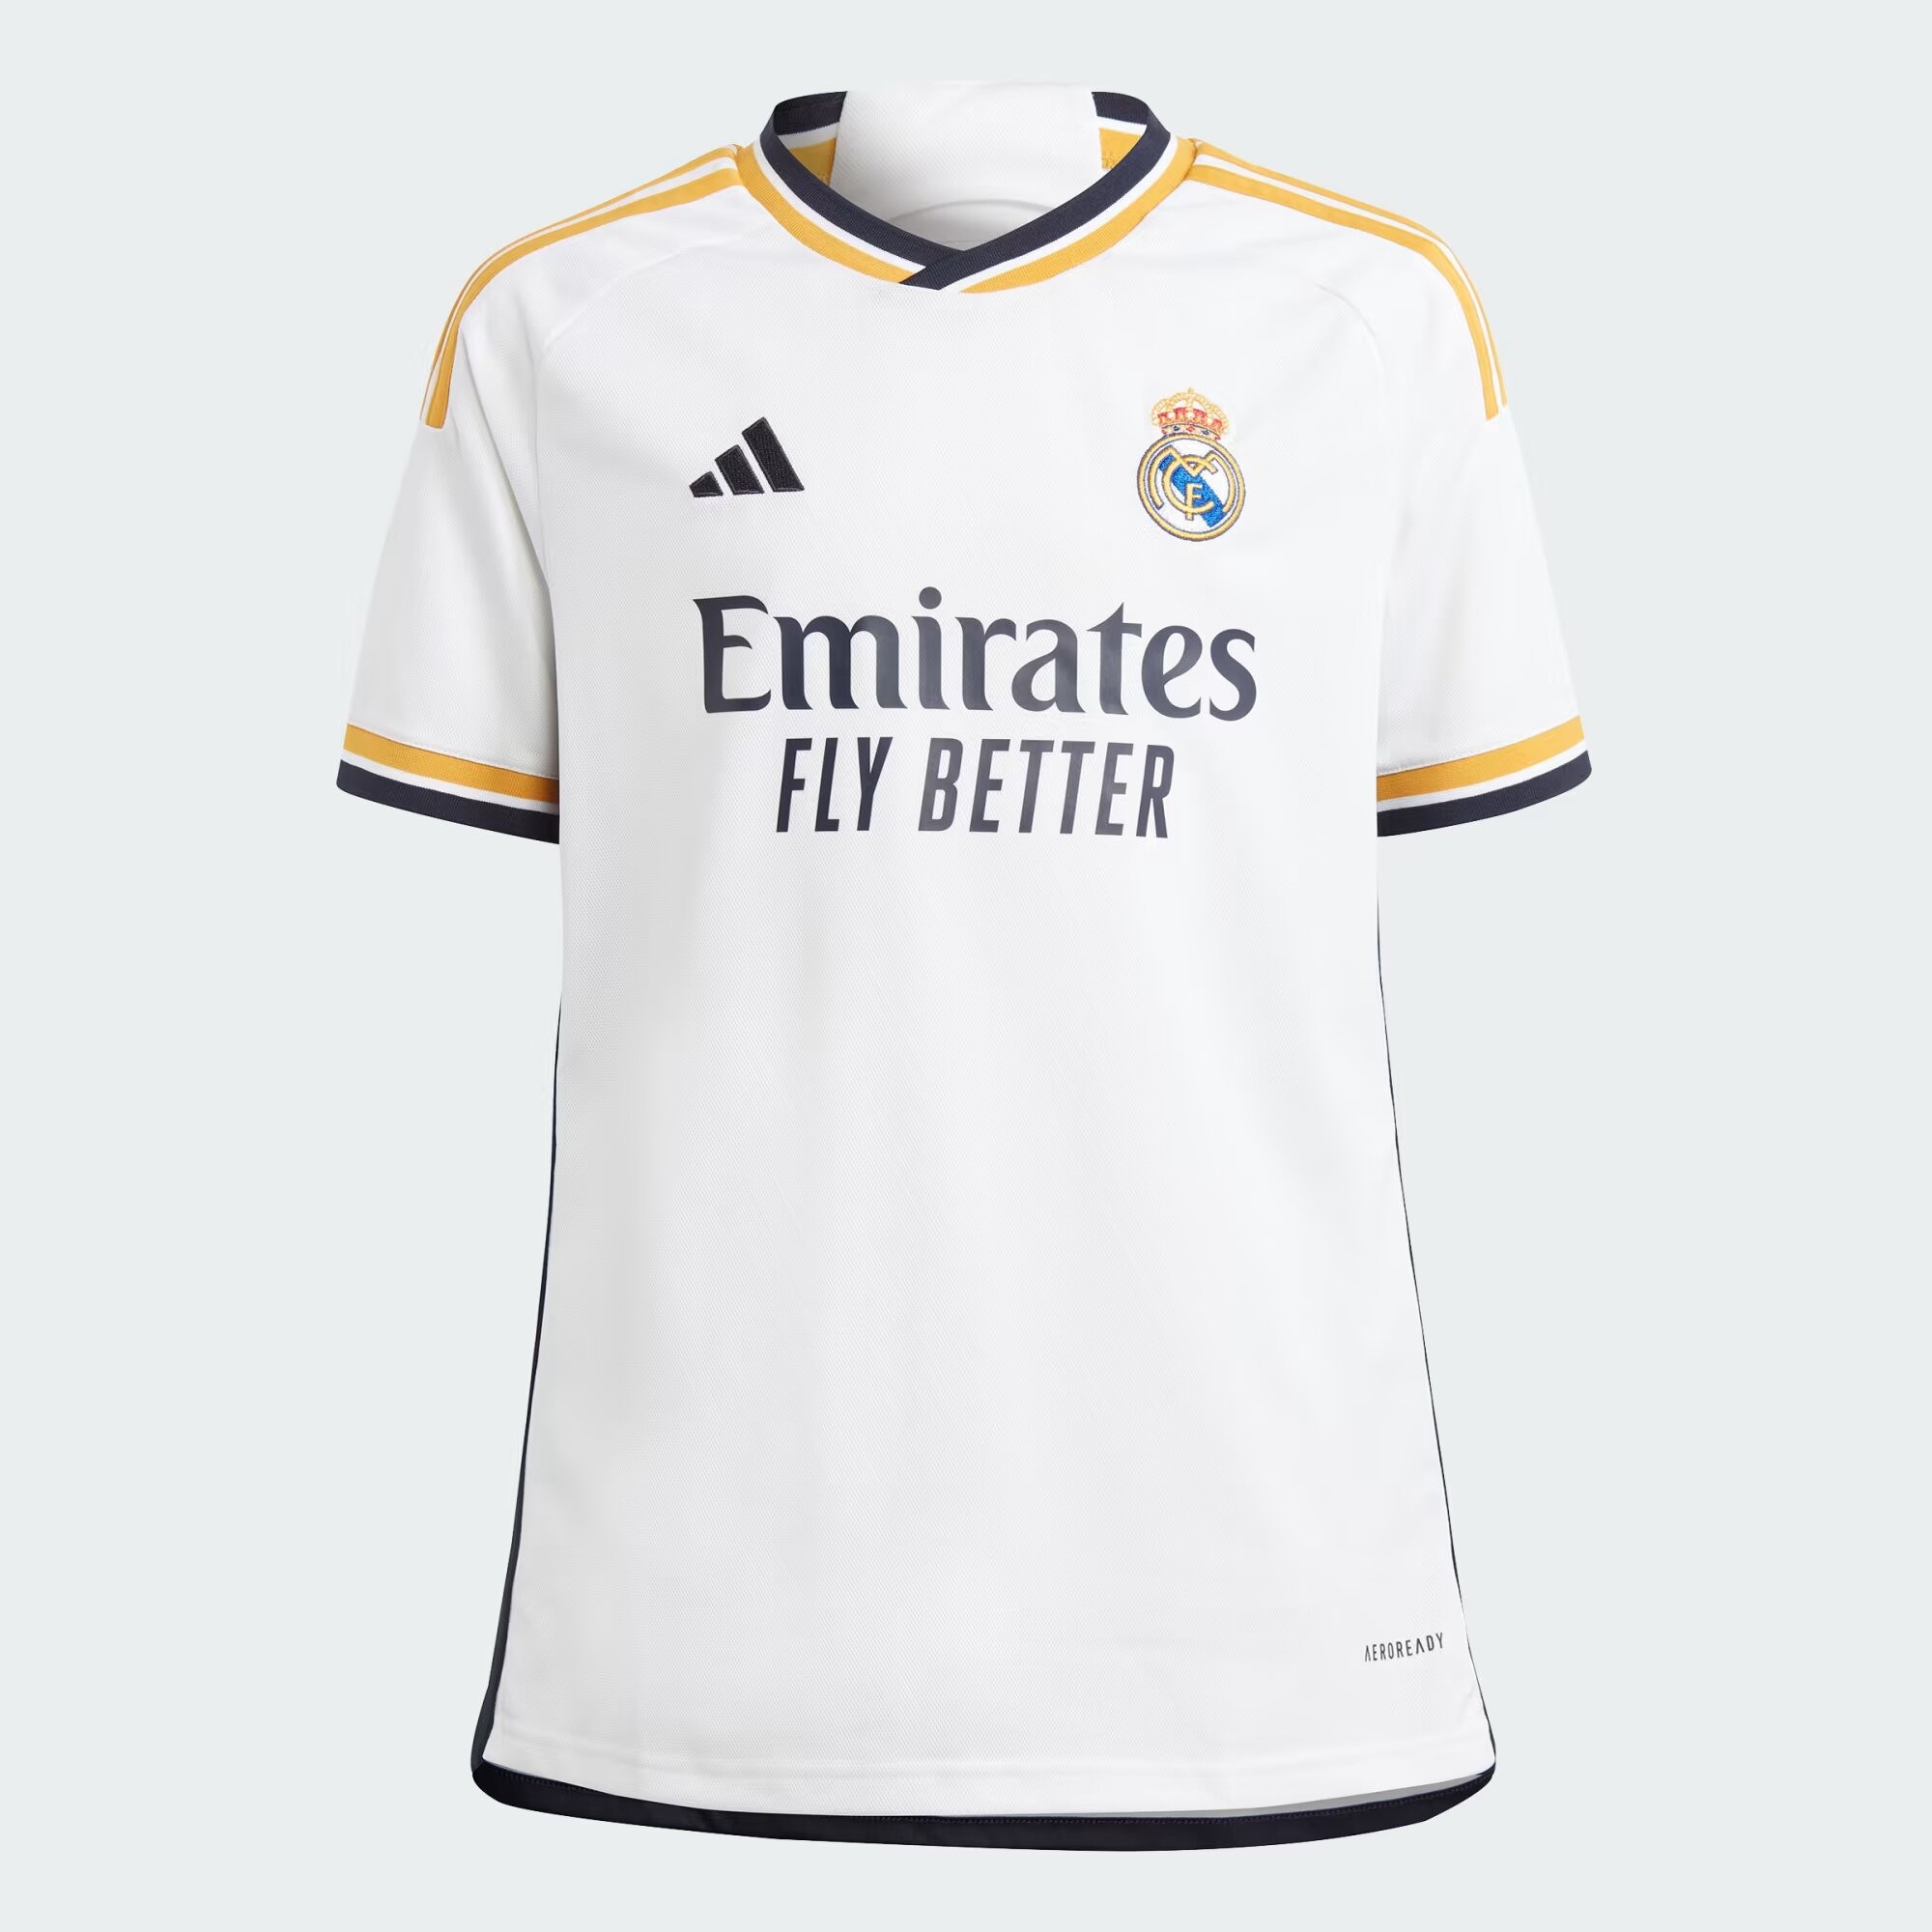 Camiseta adidas Real Madrid 23-24 1ª equipación IB0011 - Deportes Manzanedo